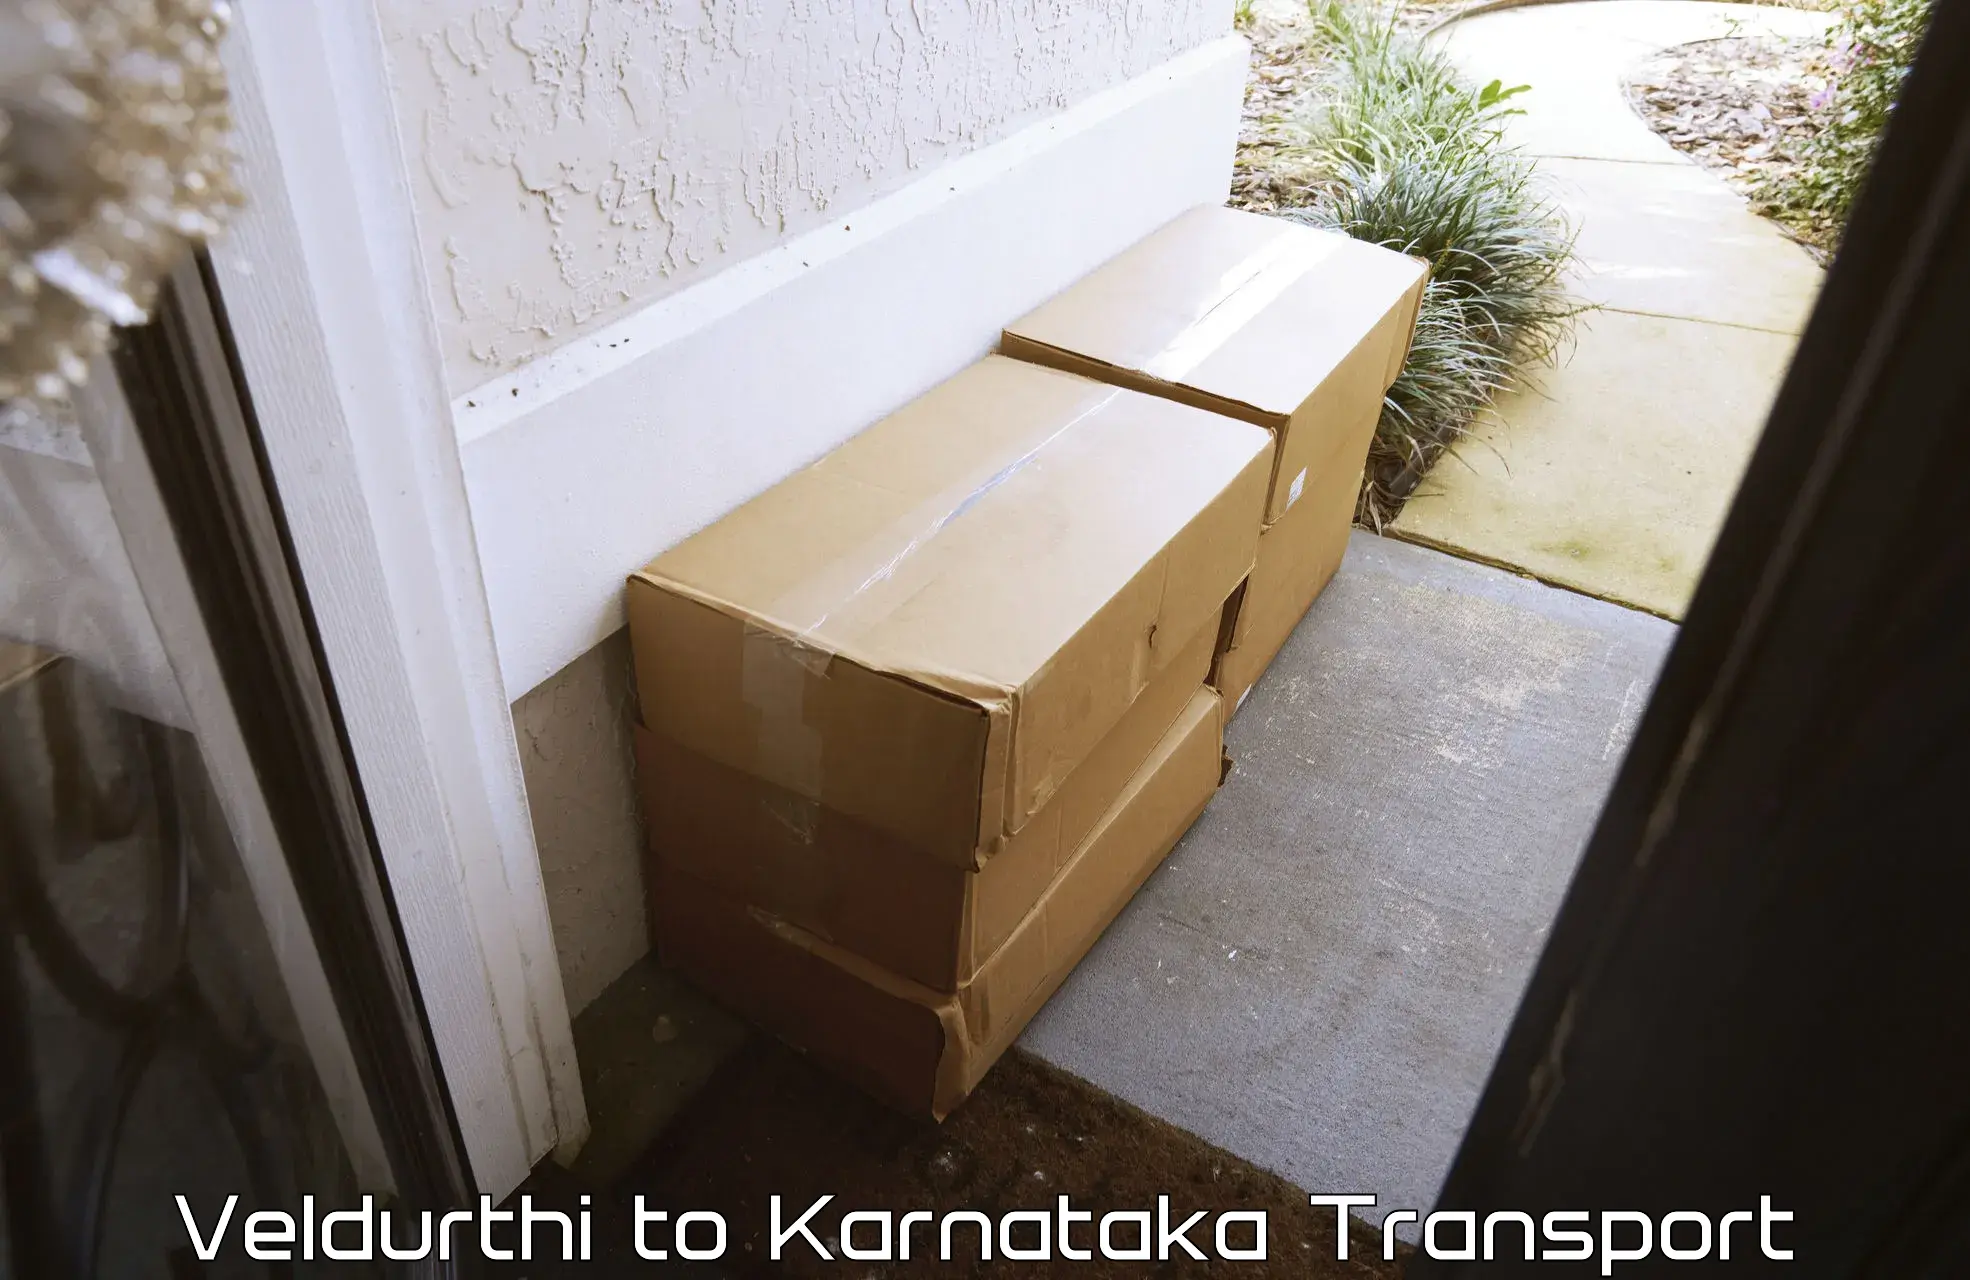 Luggage transport services Veldurthi to Turuvekere